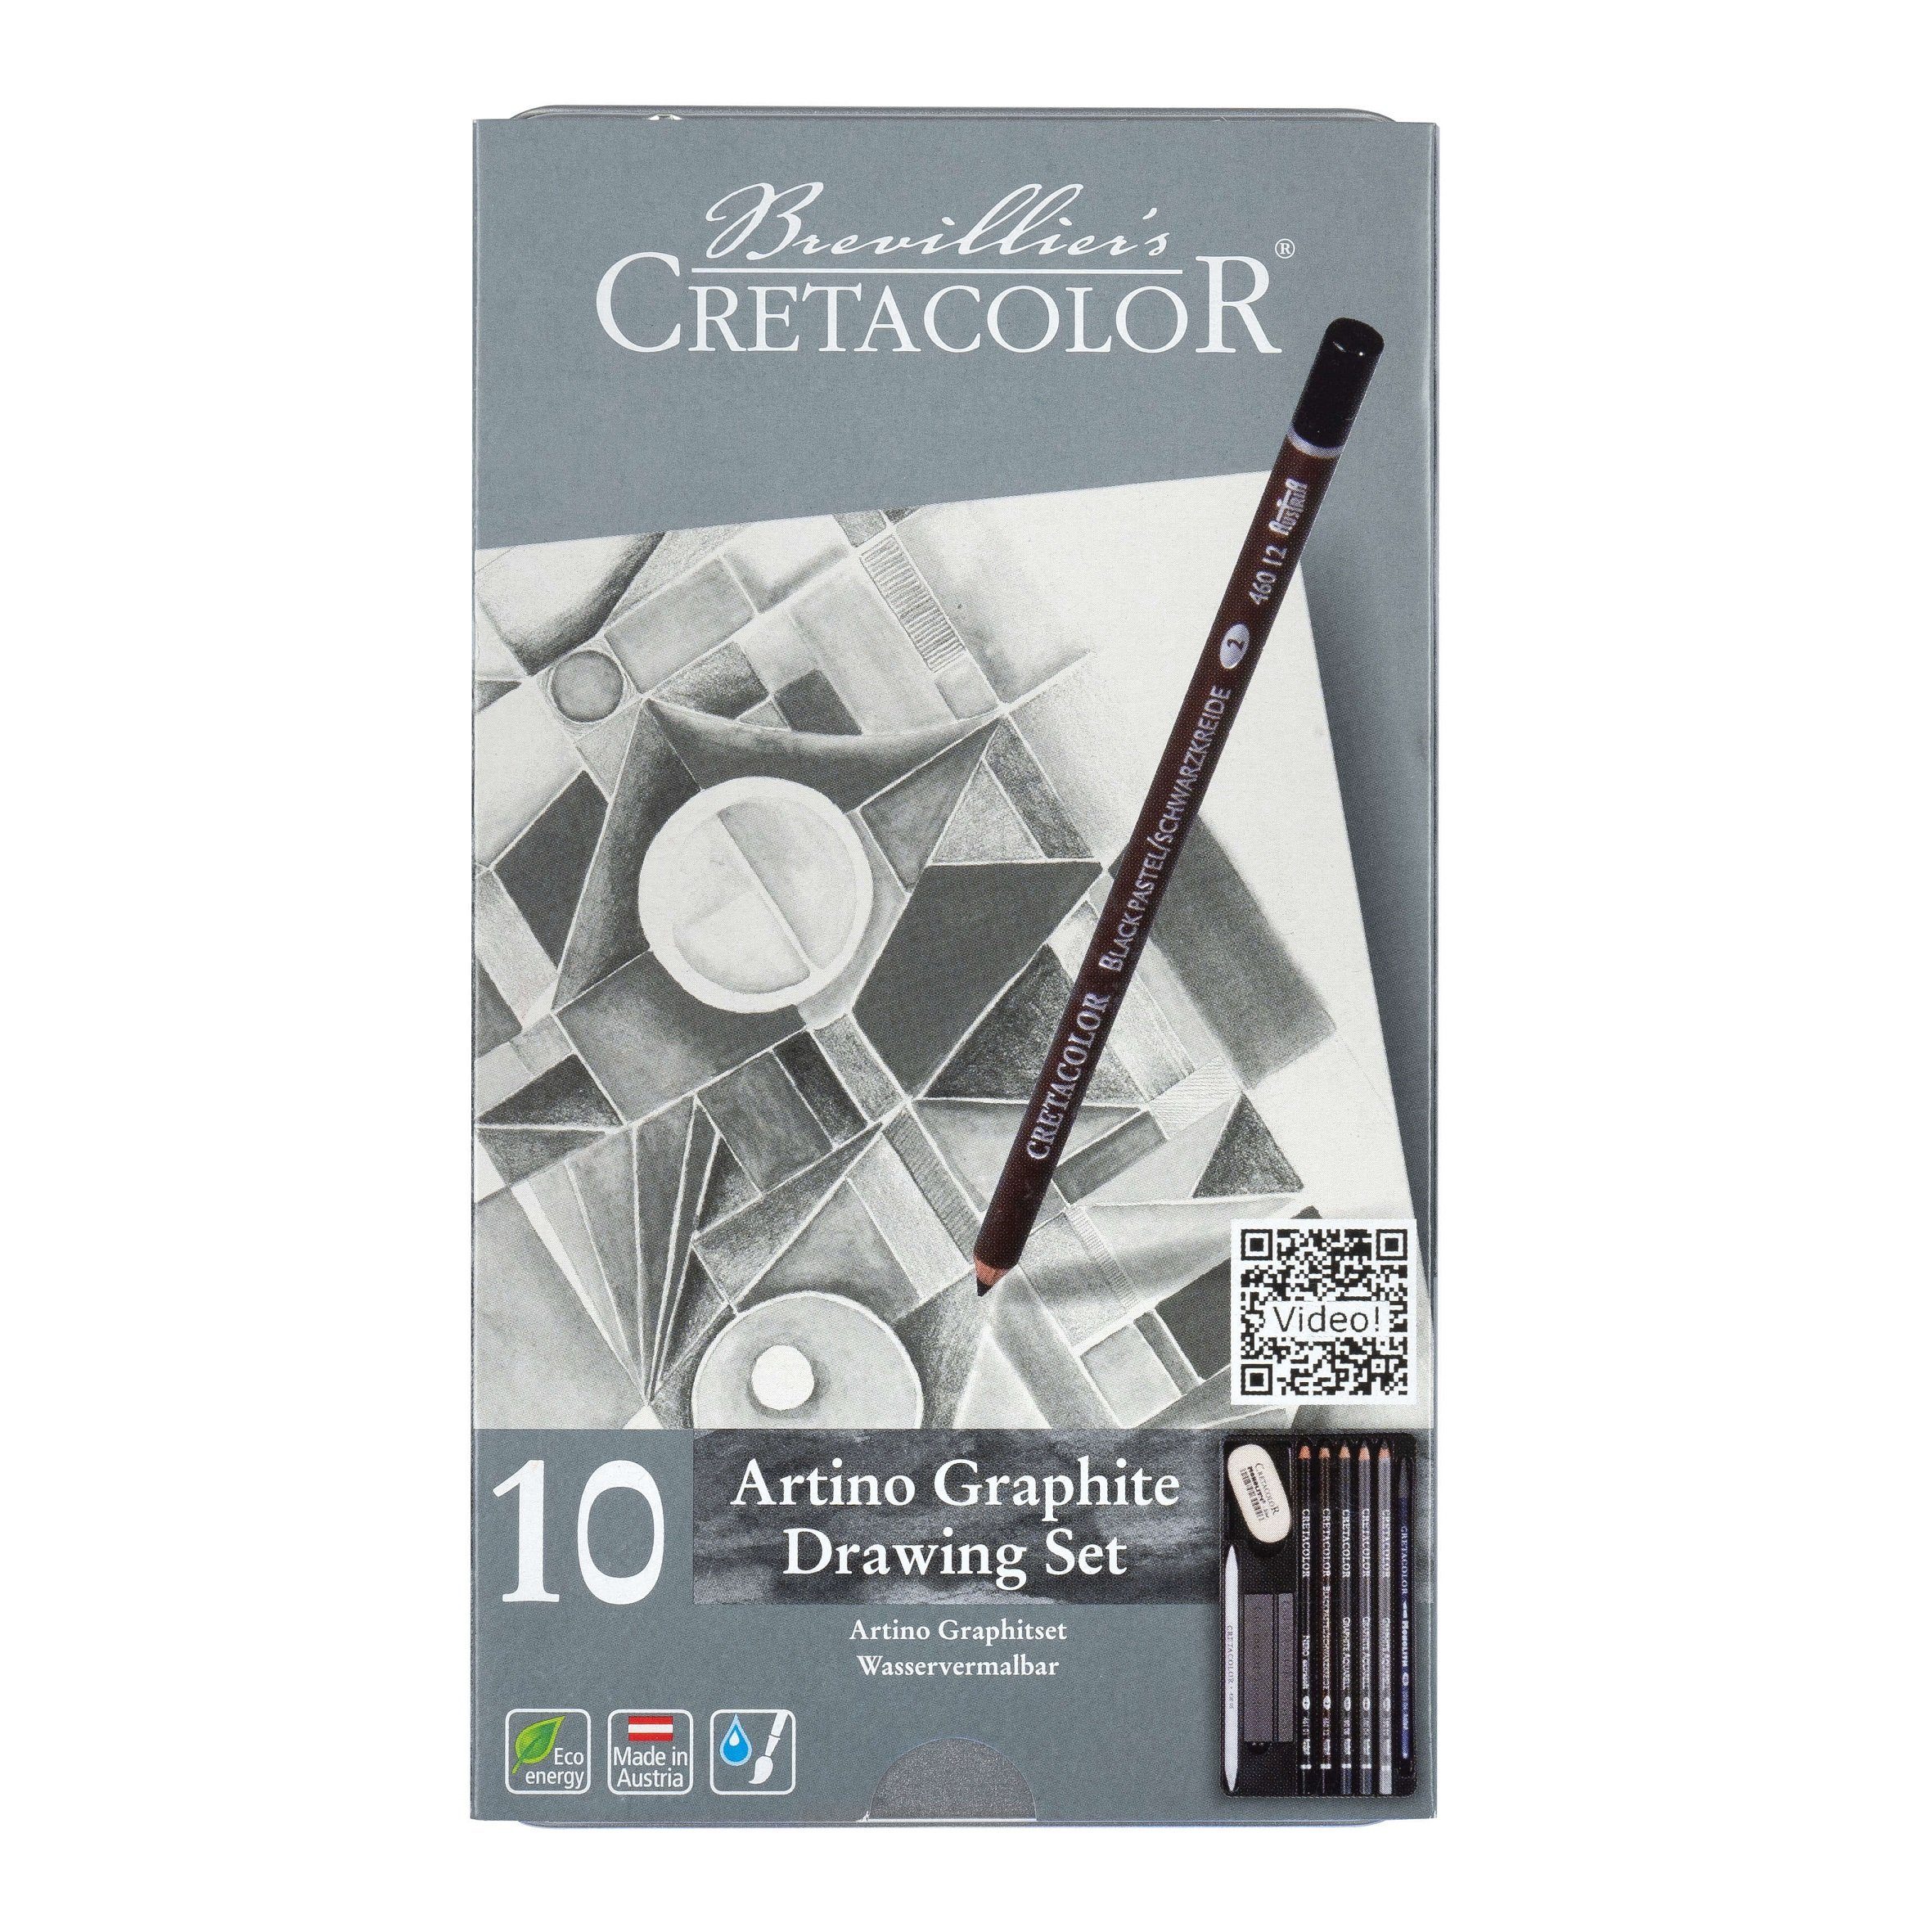 Brevilliers Cretacolor Künstlerstift 400 21, Artino Graphitset 10-teilig, wasservermalbare Graphit- und Kreideprodukte - Made in Austria